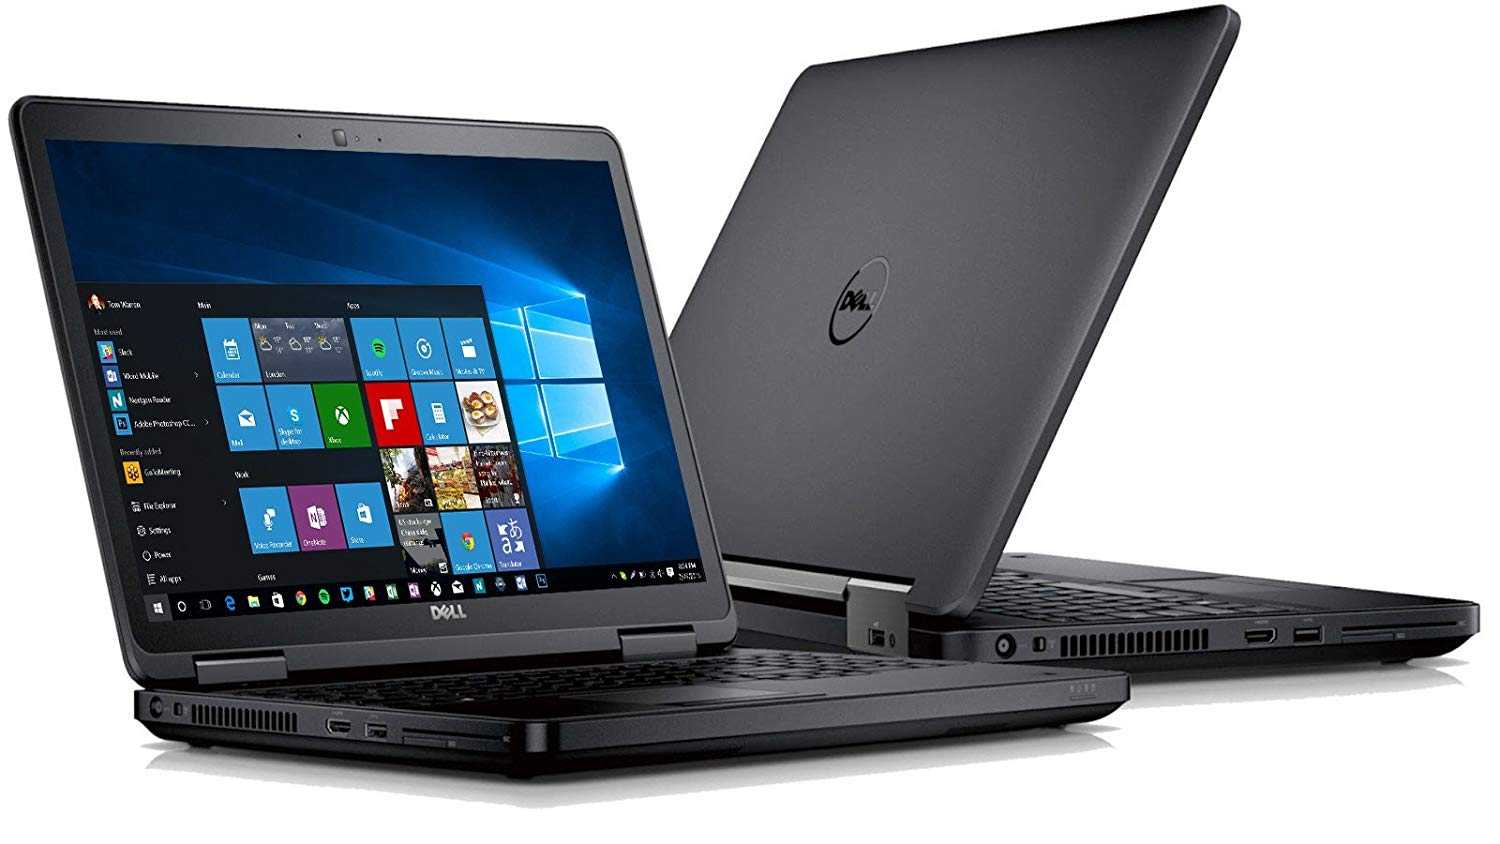 Ноутбук Dell Latitude E5440 (L54345DIL-11) Black - подробные характеристики обзоры видео фото Цены в интернет-магазинах где можно купить ноутбук Dell Latitude E5440 (L54345DIL-11) Black